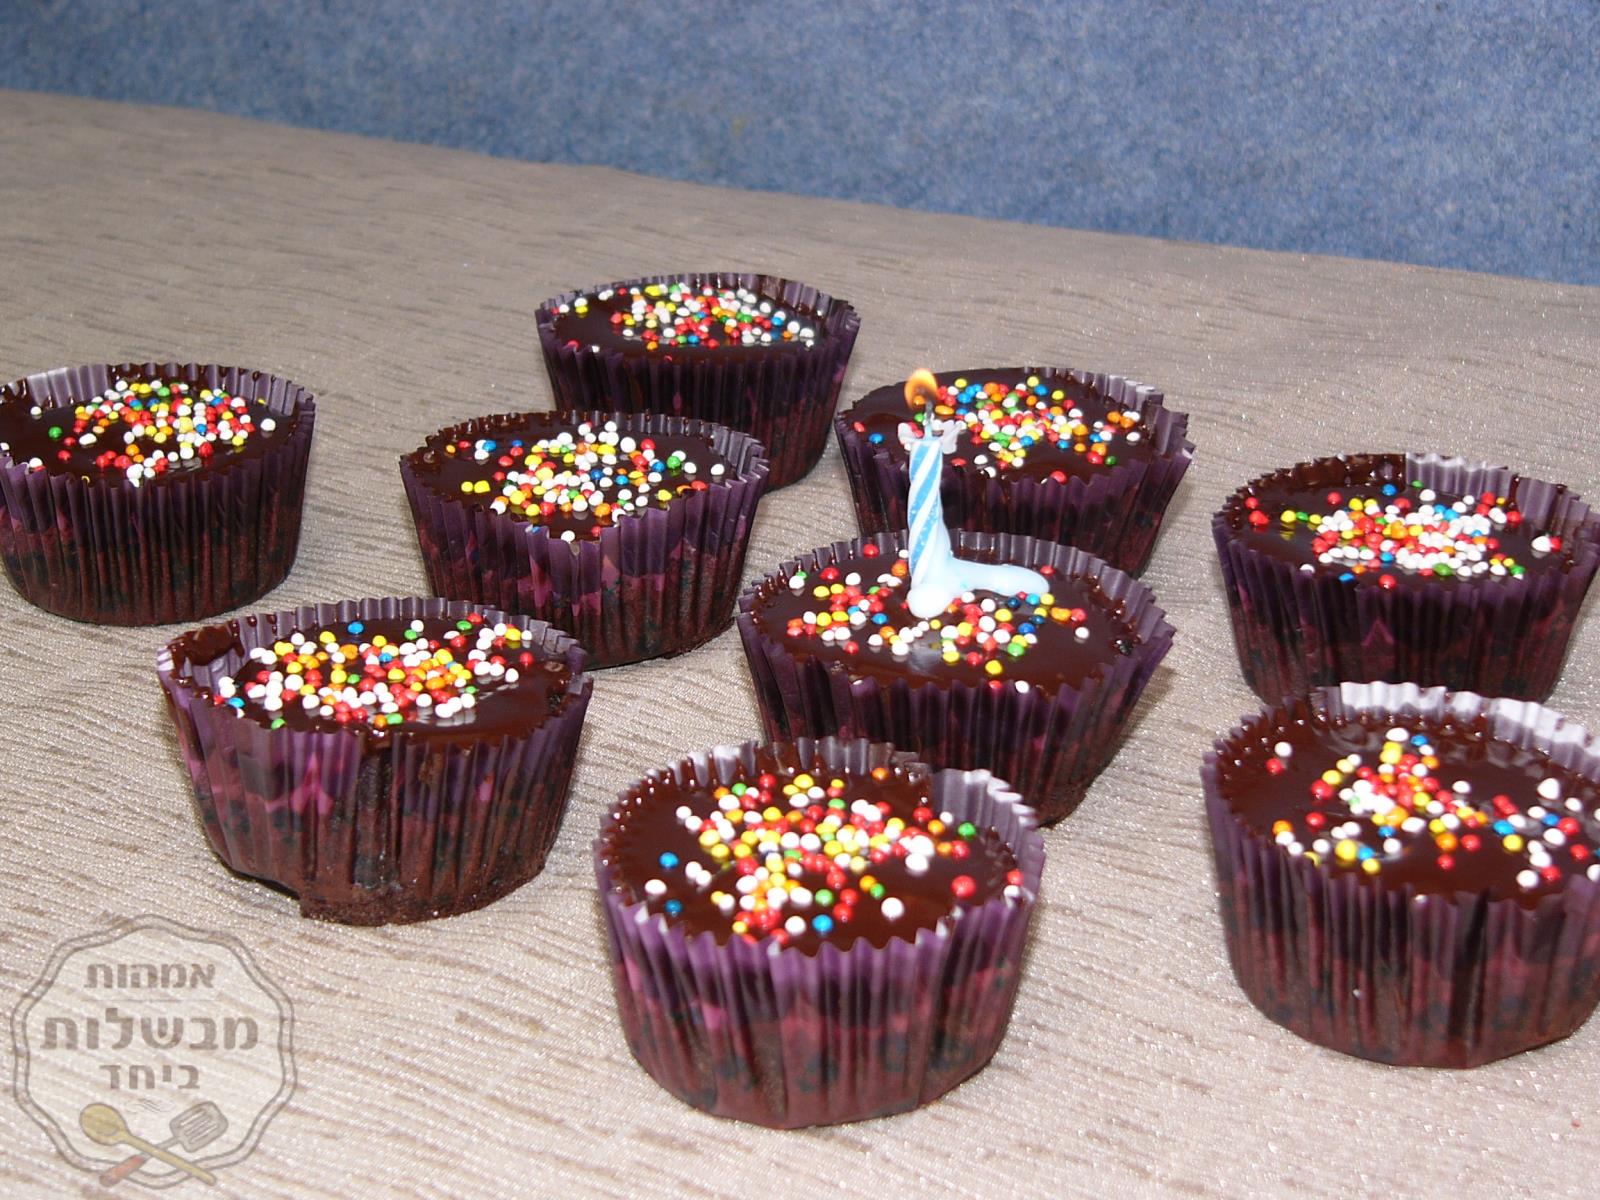 מיני קאפיקייקס שוקולד עם סוכריות צבעוניות (לימי הולדת)